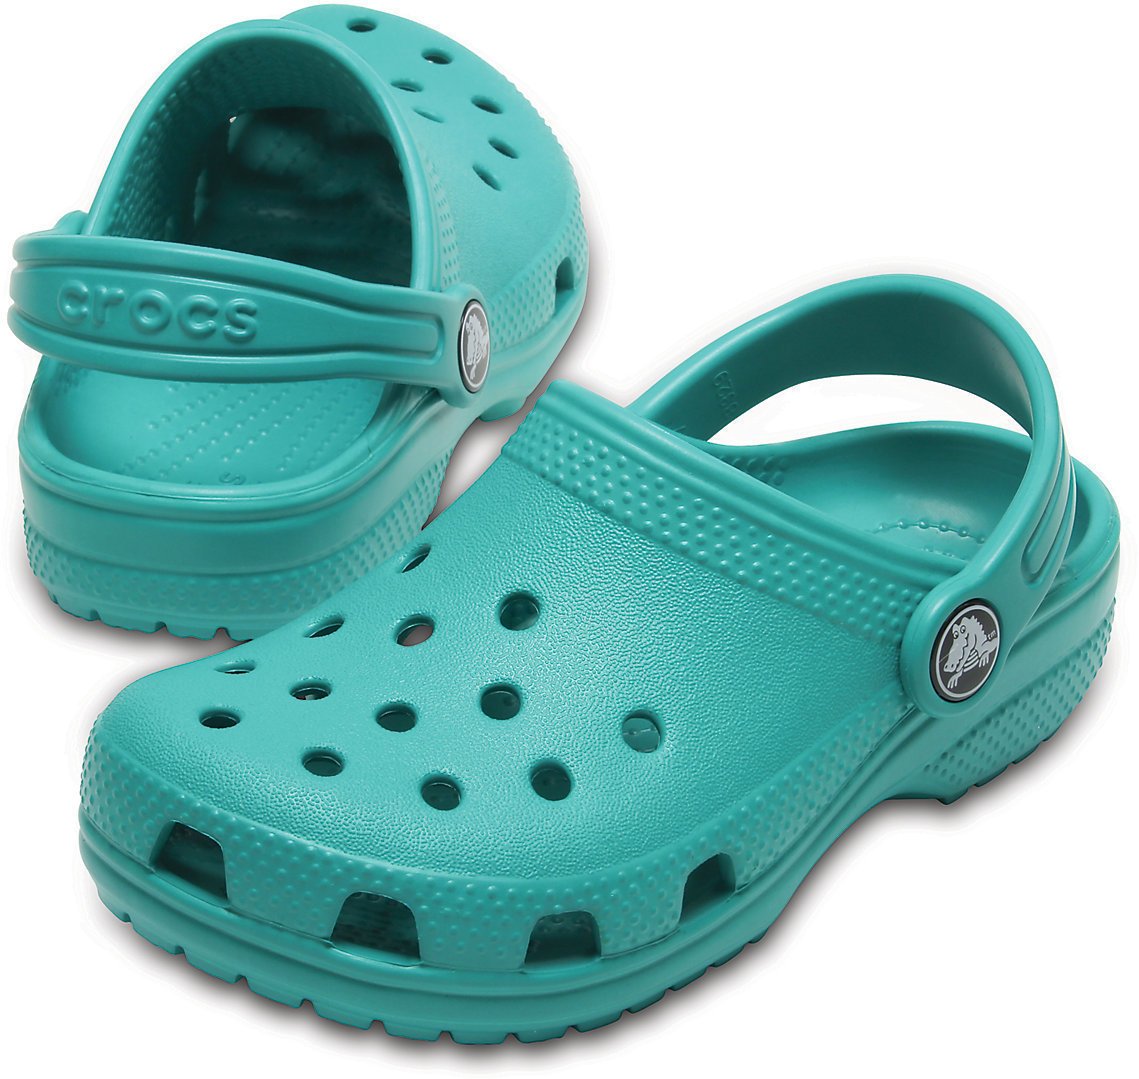 Buty żeglarskie dla dzieci Crocs Kids' Classic Clog Tropical Teal 22-23